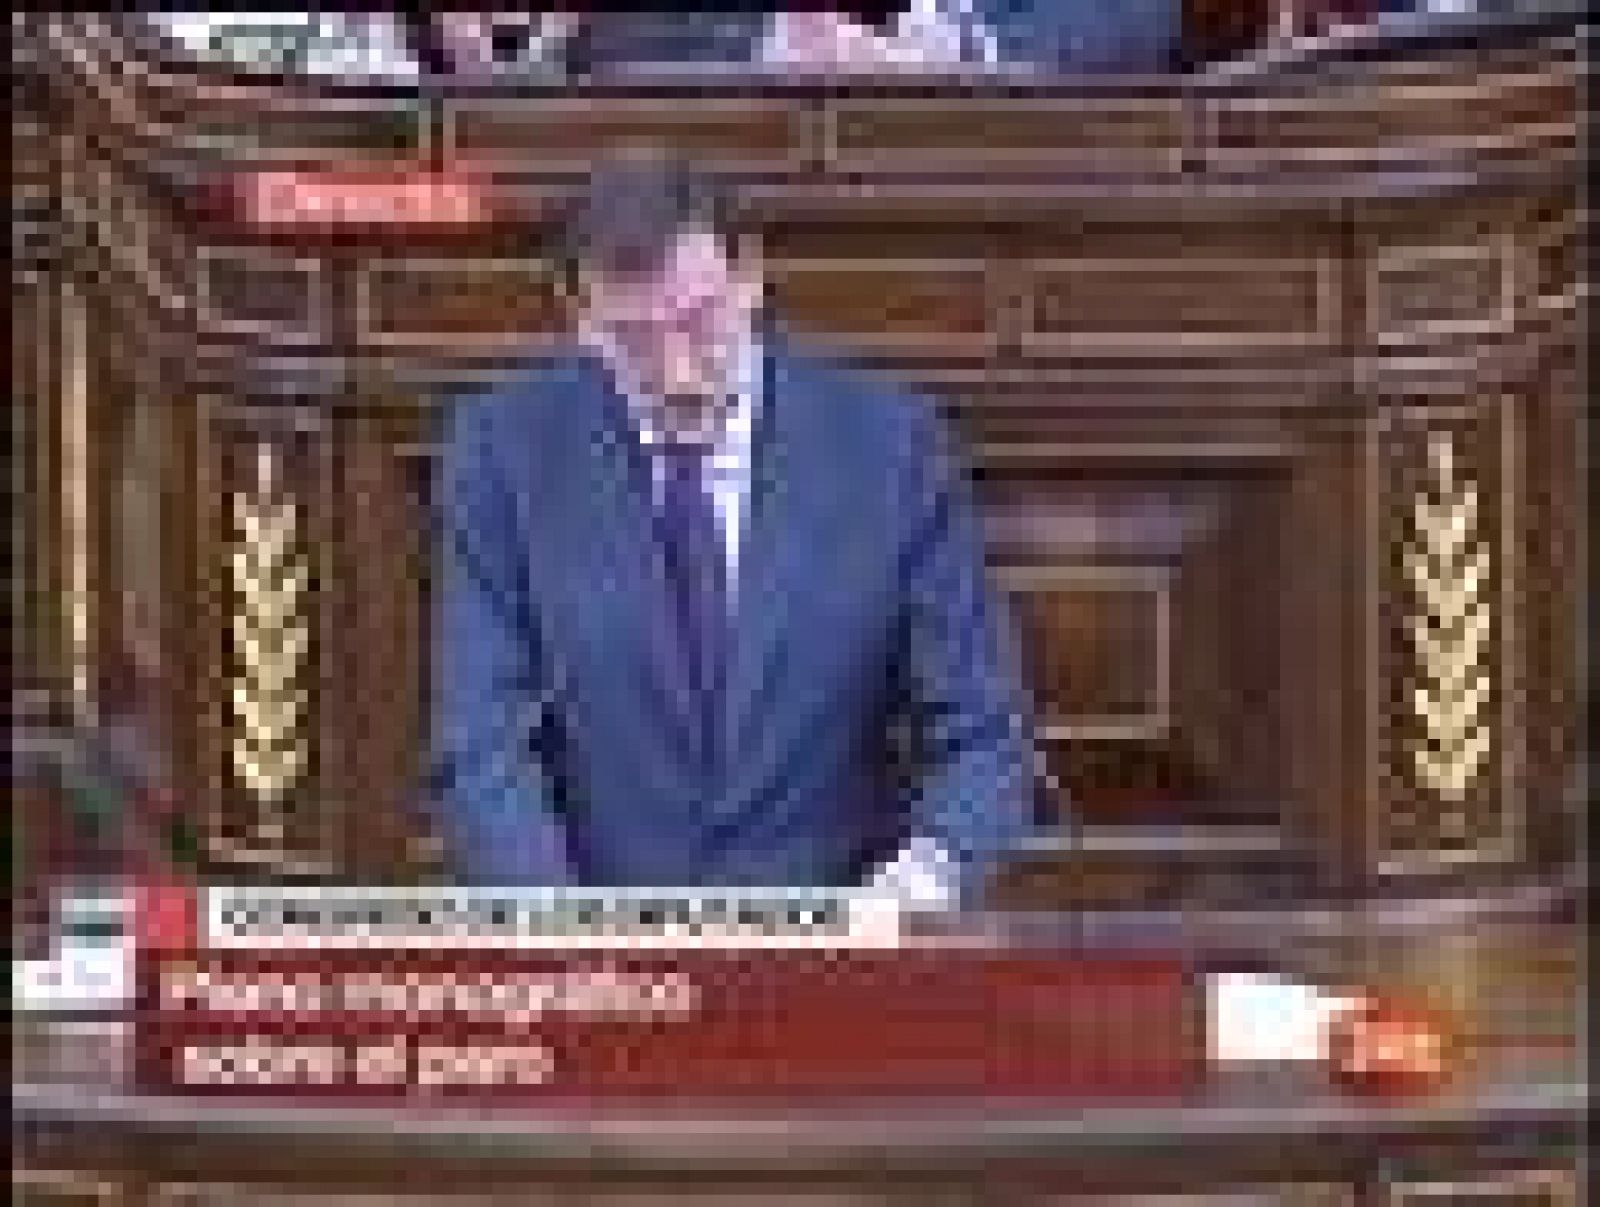 El presidente del Partido Popular, Mariano Rajoy, ha acusado a Zapatero de no "ofrecer nada nuevo" para solucionar la "bochornosa" situación del desempleo en España y de intentar "maquillar" las cifras. En su opinión, sólo hay una solución: "Que Zapatero se retire y convoque elecciones generales".